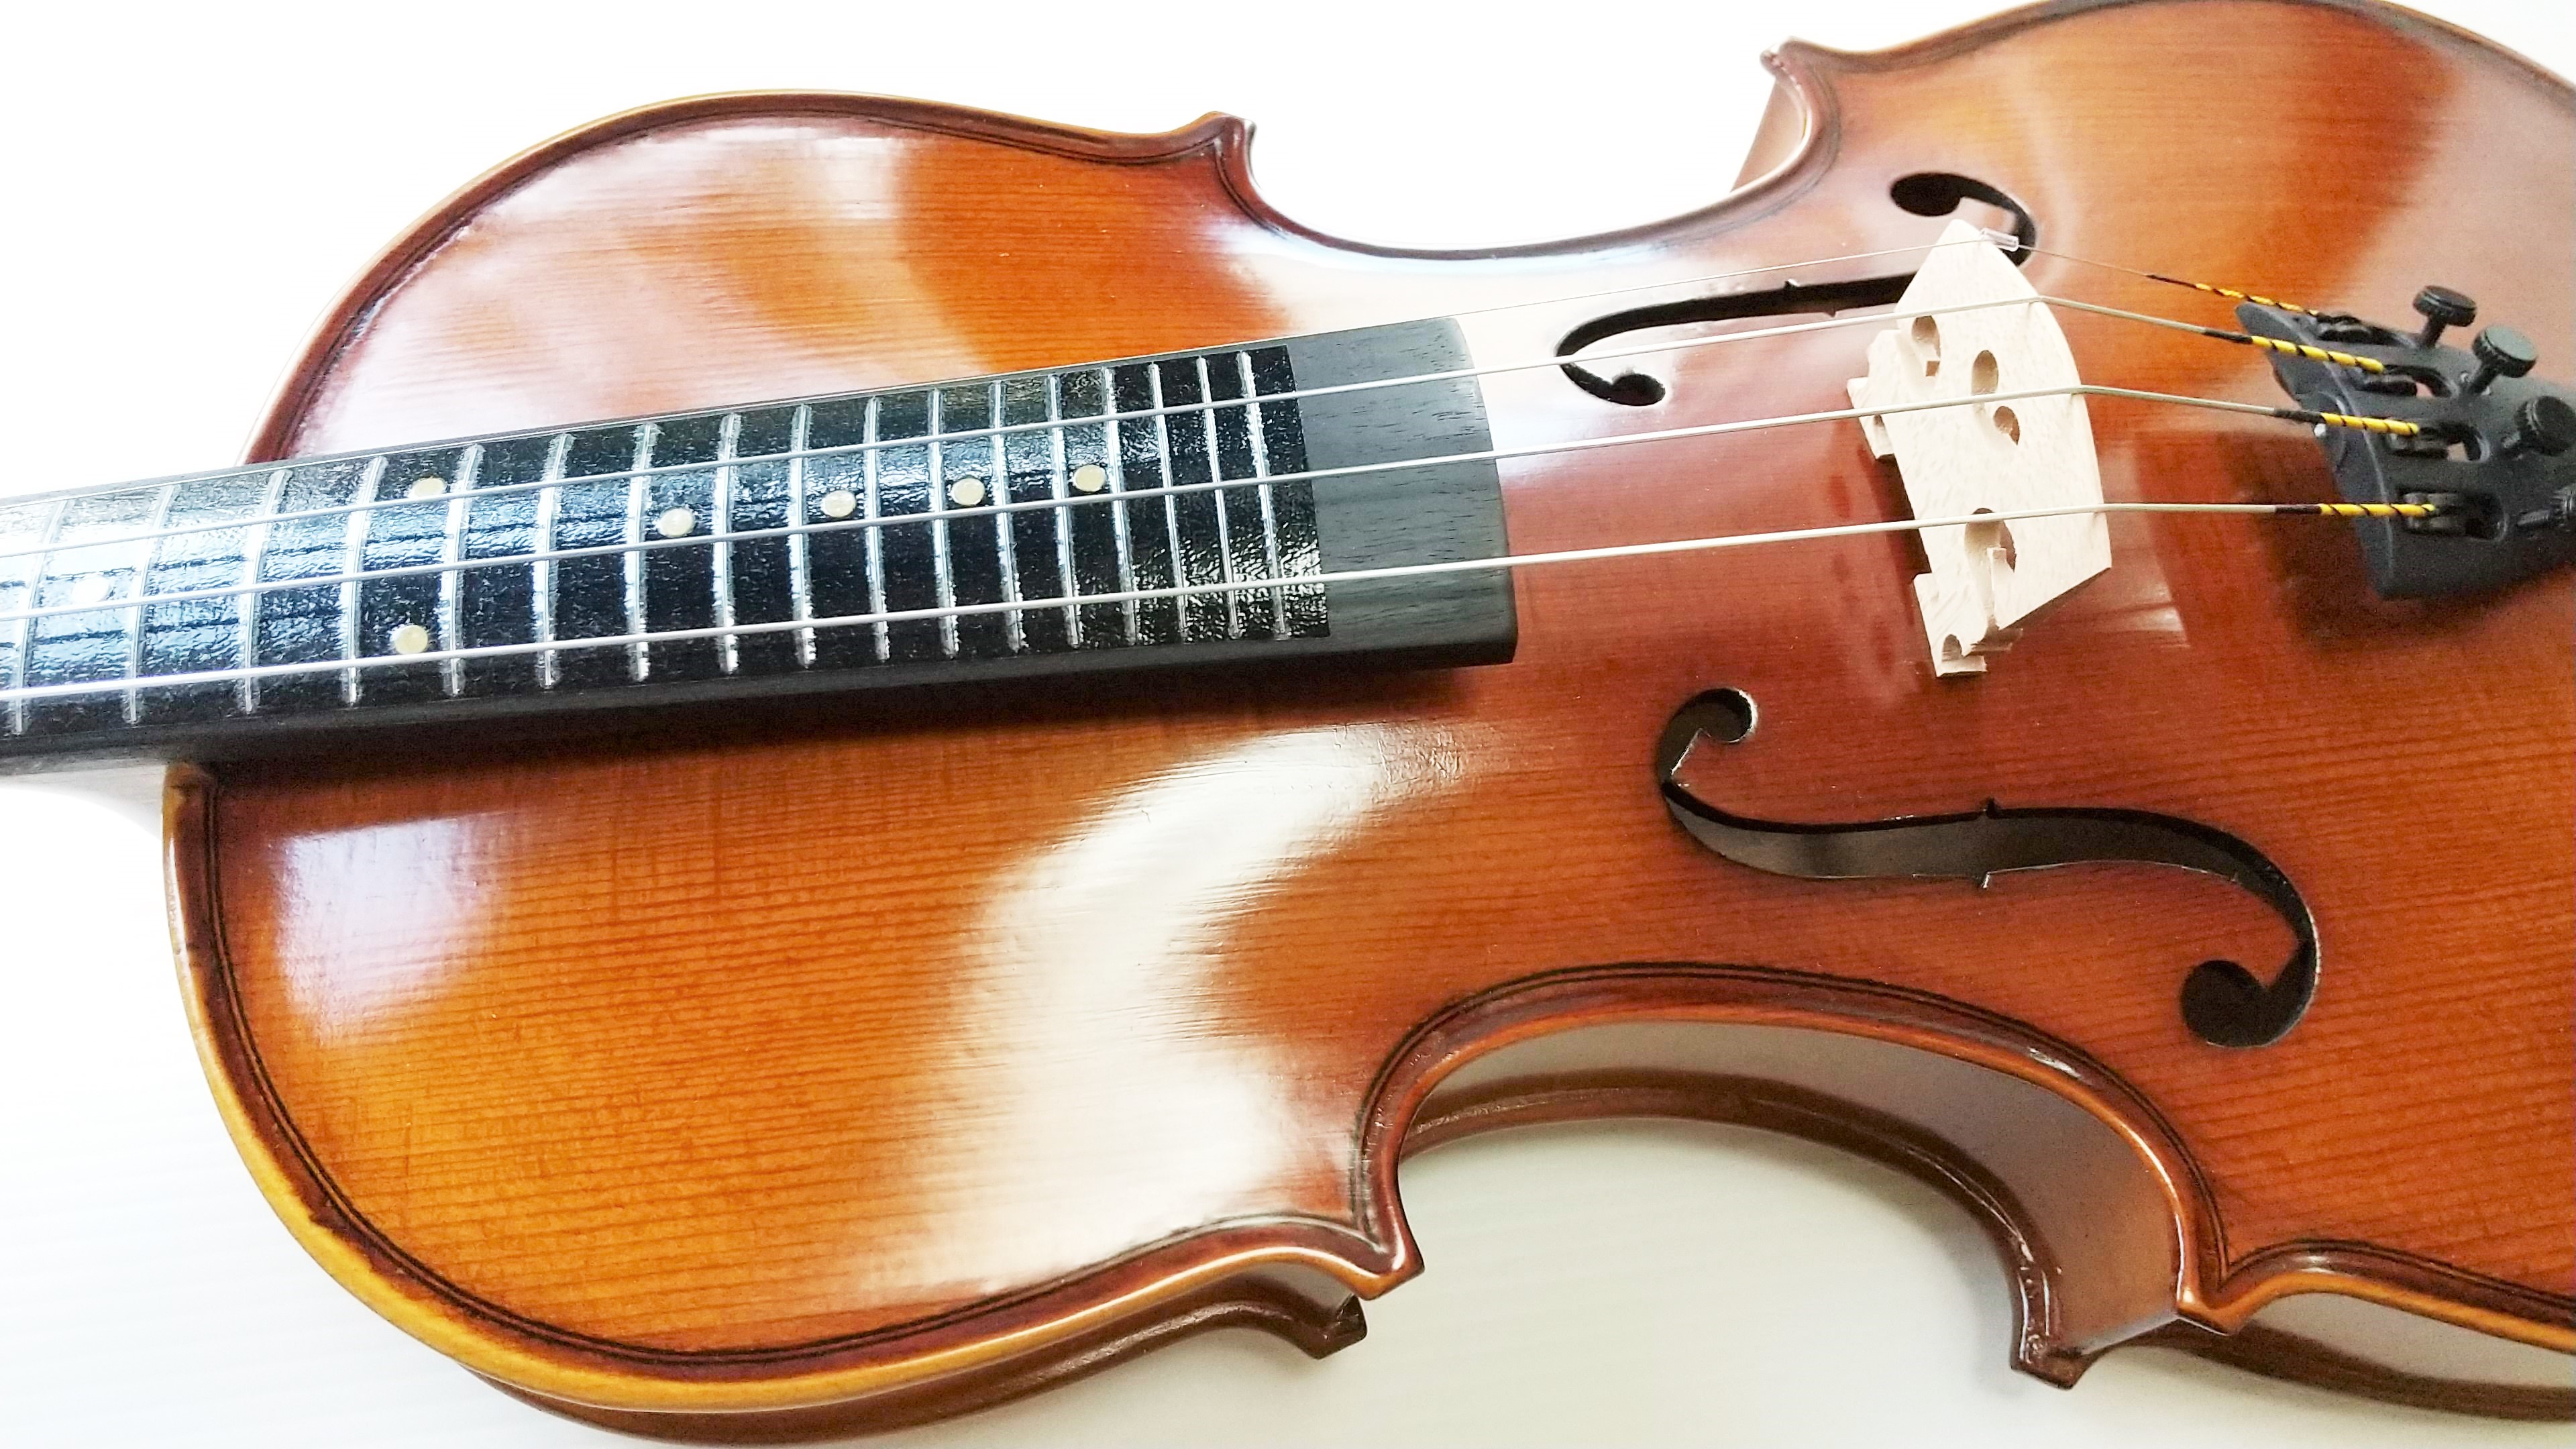 Pretorio 初めてでも簡単に弾ける フレット付きバイオリン セット PV-200F 4/4サイズ (ポジションマークあり)